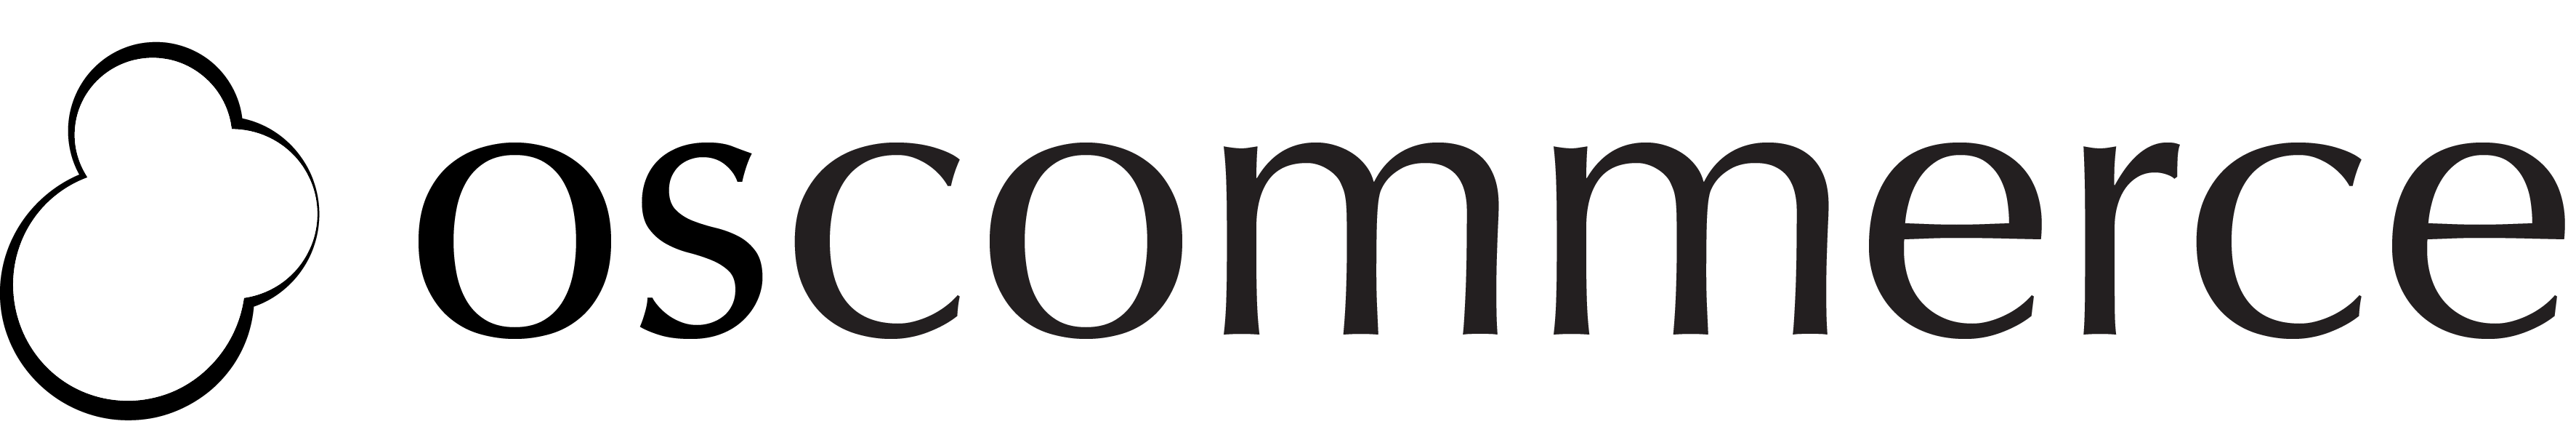 osCommerce Logo - Marketing Material | osCommerce